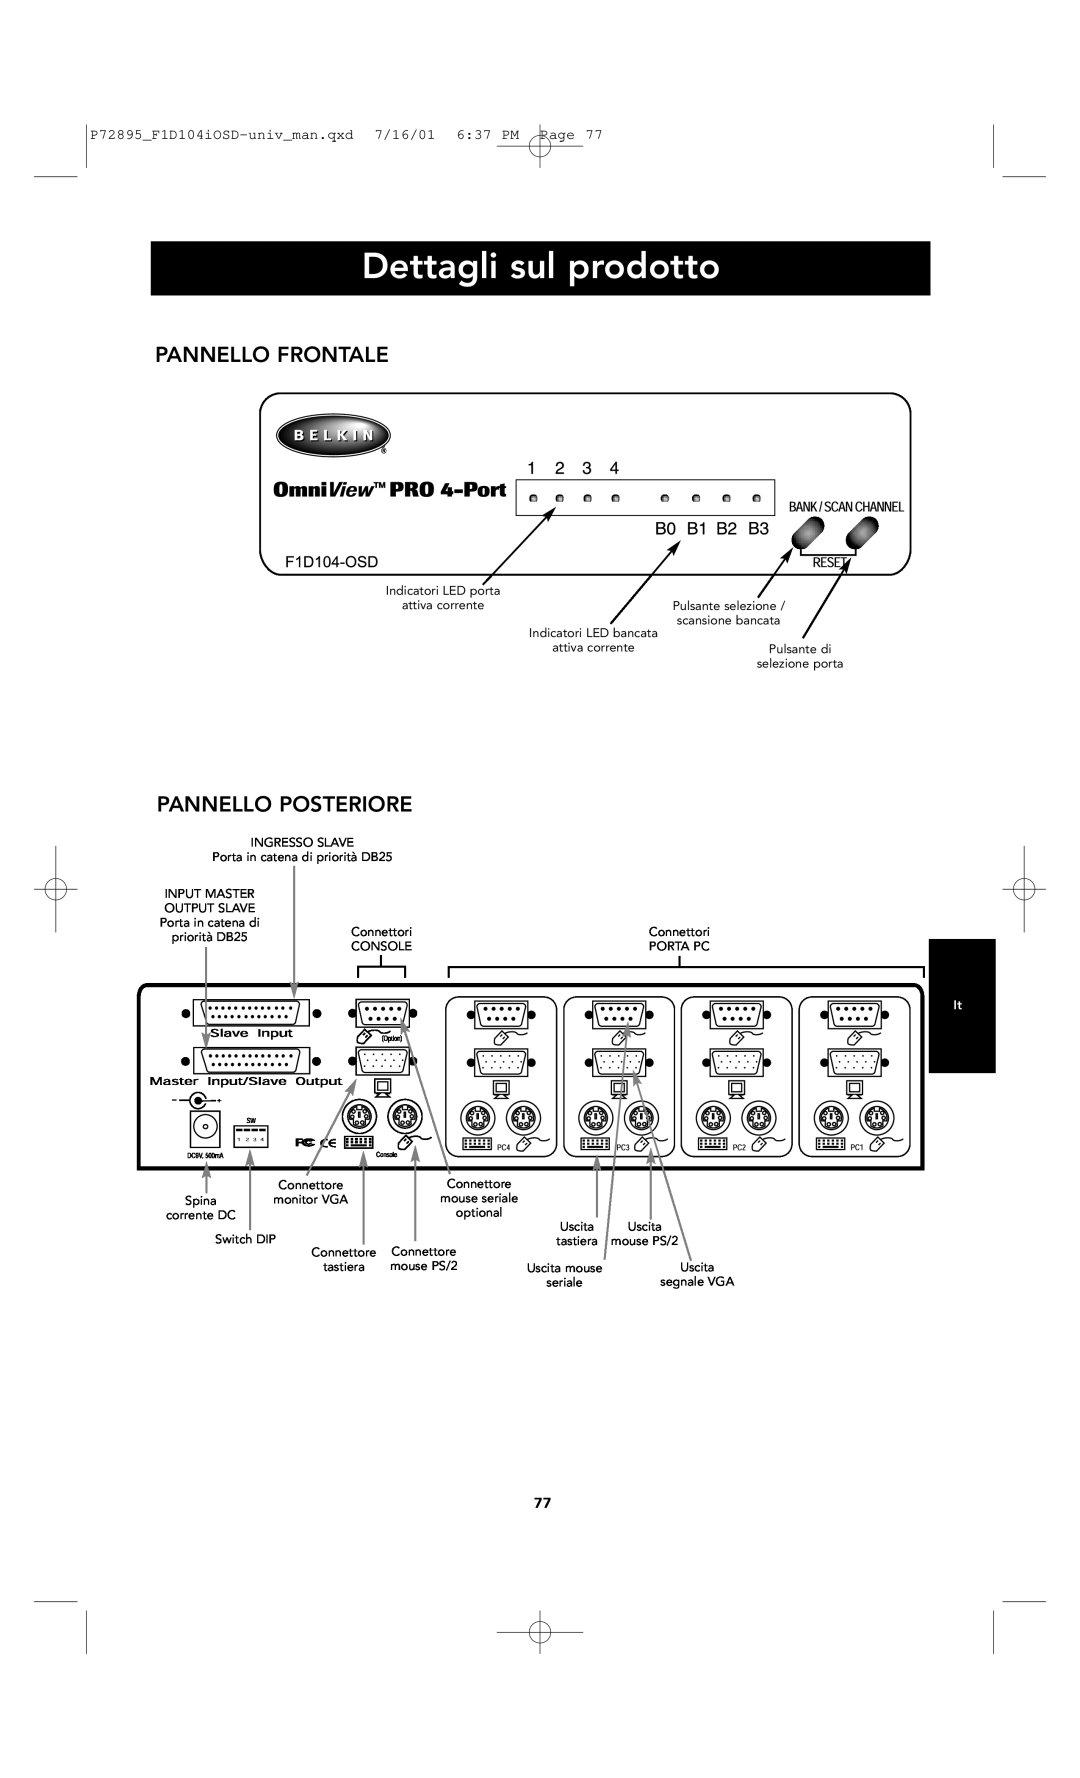 Belkin F1D104-OSD user manual Dettagli sul prodotto, Pannello Frontale, Pannello Posteriore 